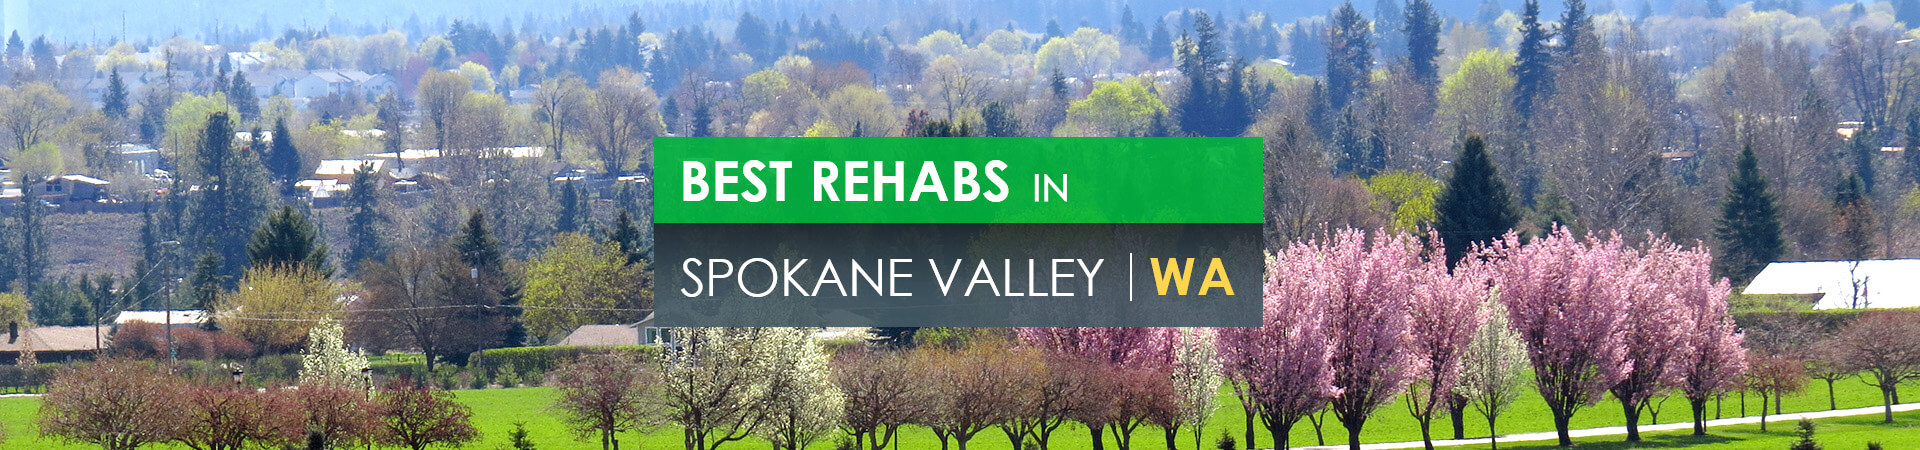 Best rehabs in Spokane Valley, WA